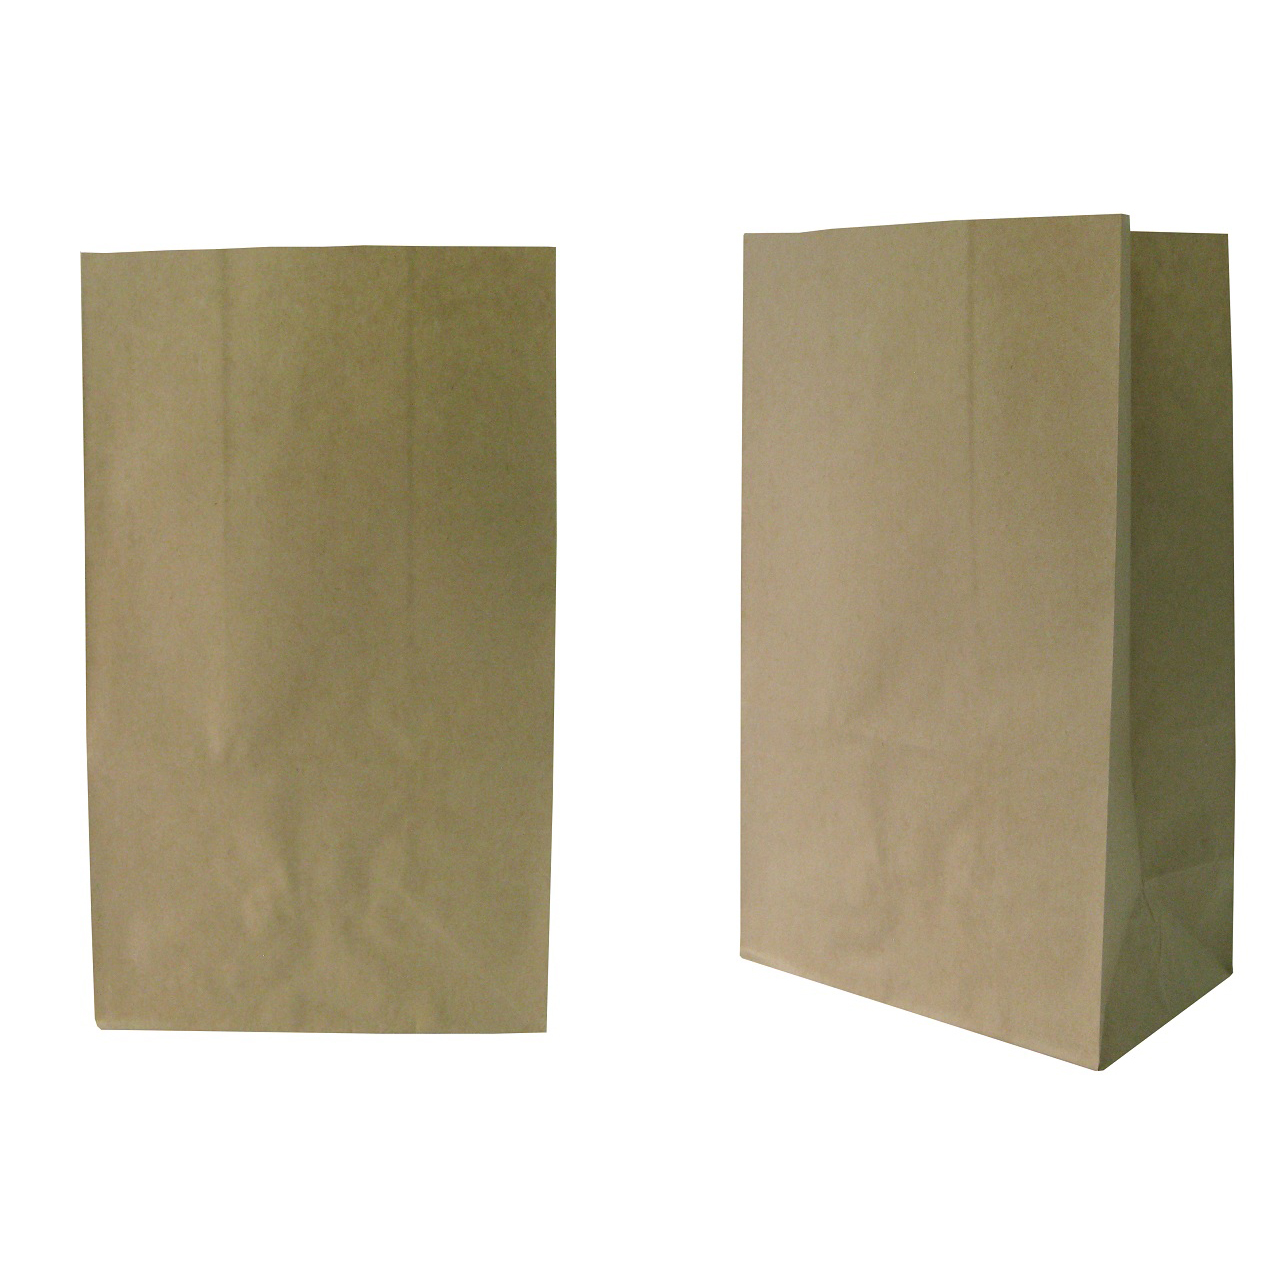 ถุงกระดาษมีก้น 50 แกรม สีน้ำตาล ขนาด 13x8x22 cm. (20 ใบ/แพ็ค)